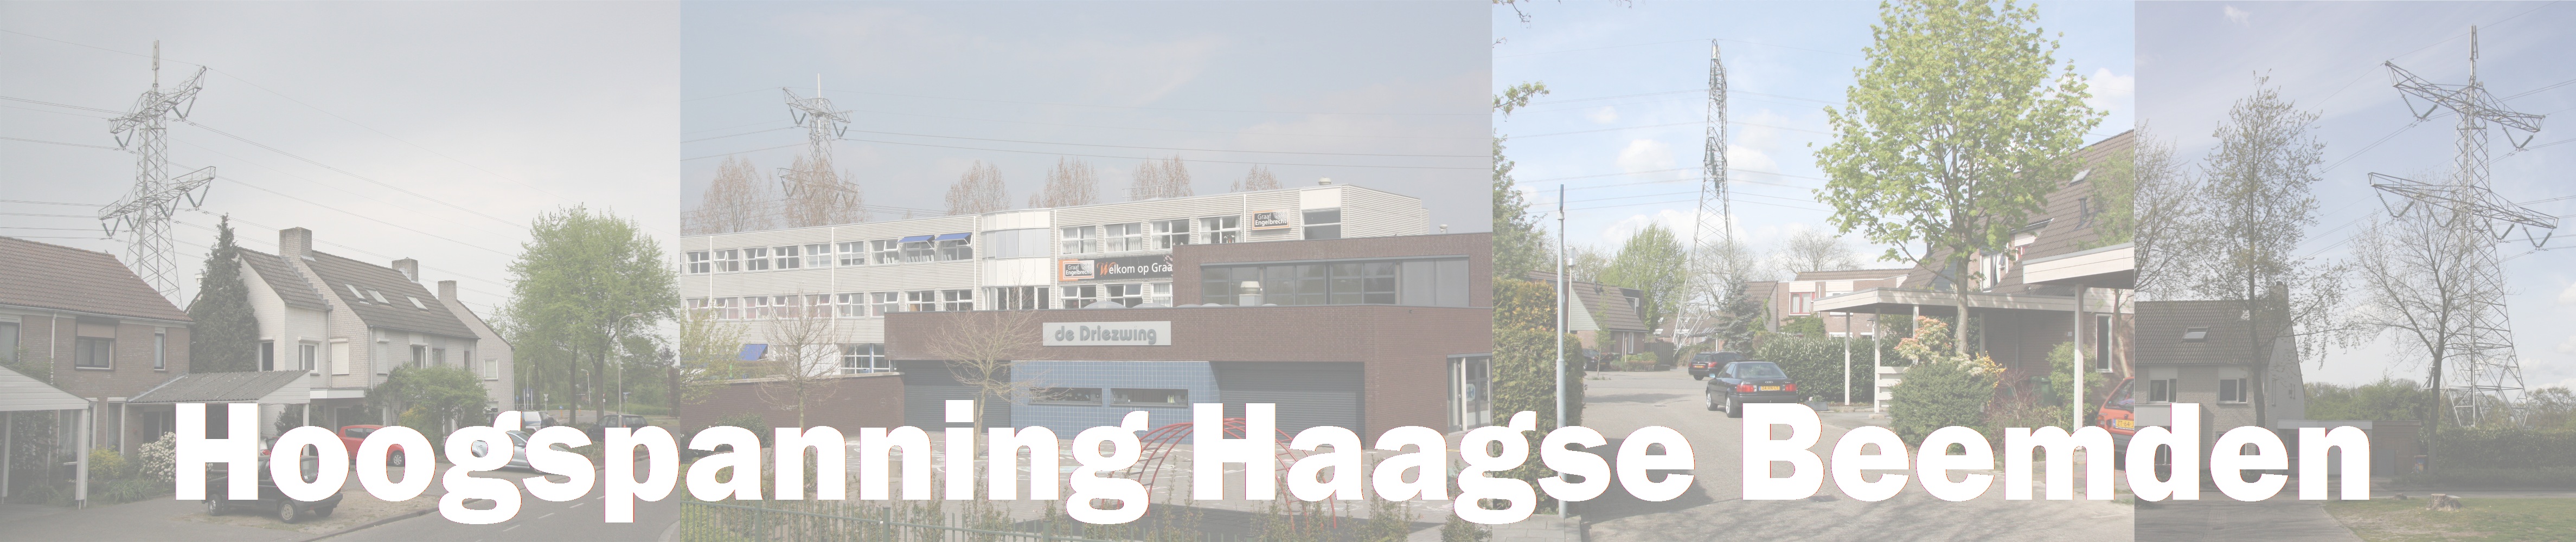 Werkgroep Hoogspanning Haagse Beemden